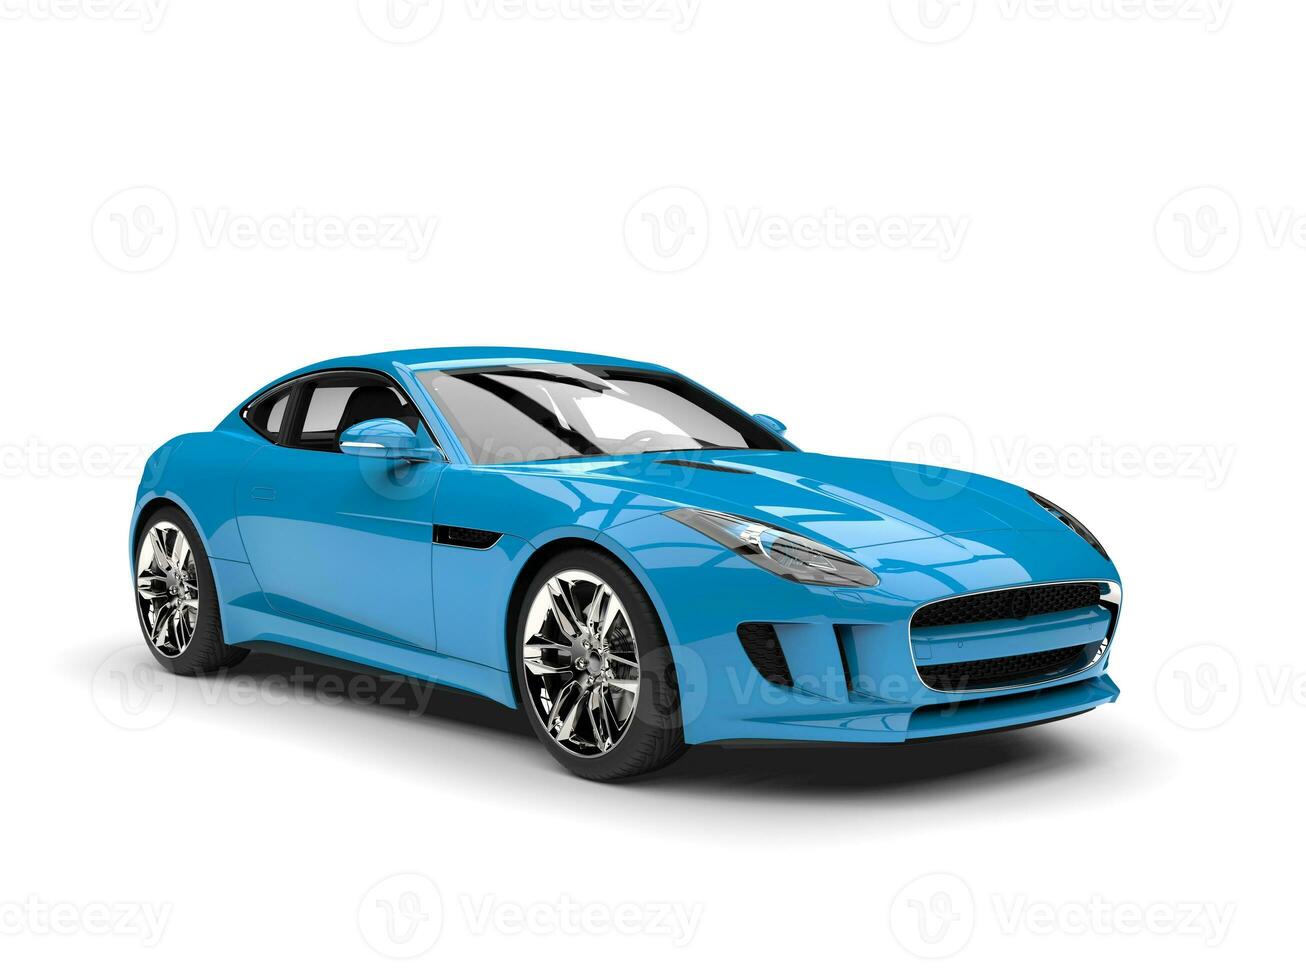 brilhante azul moderno luxo Esportes carro foto